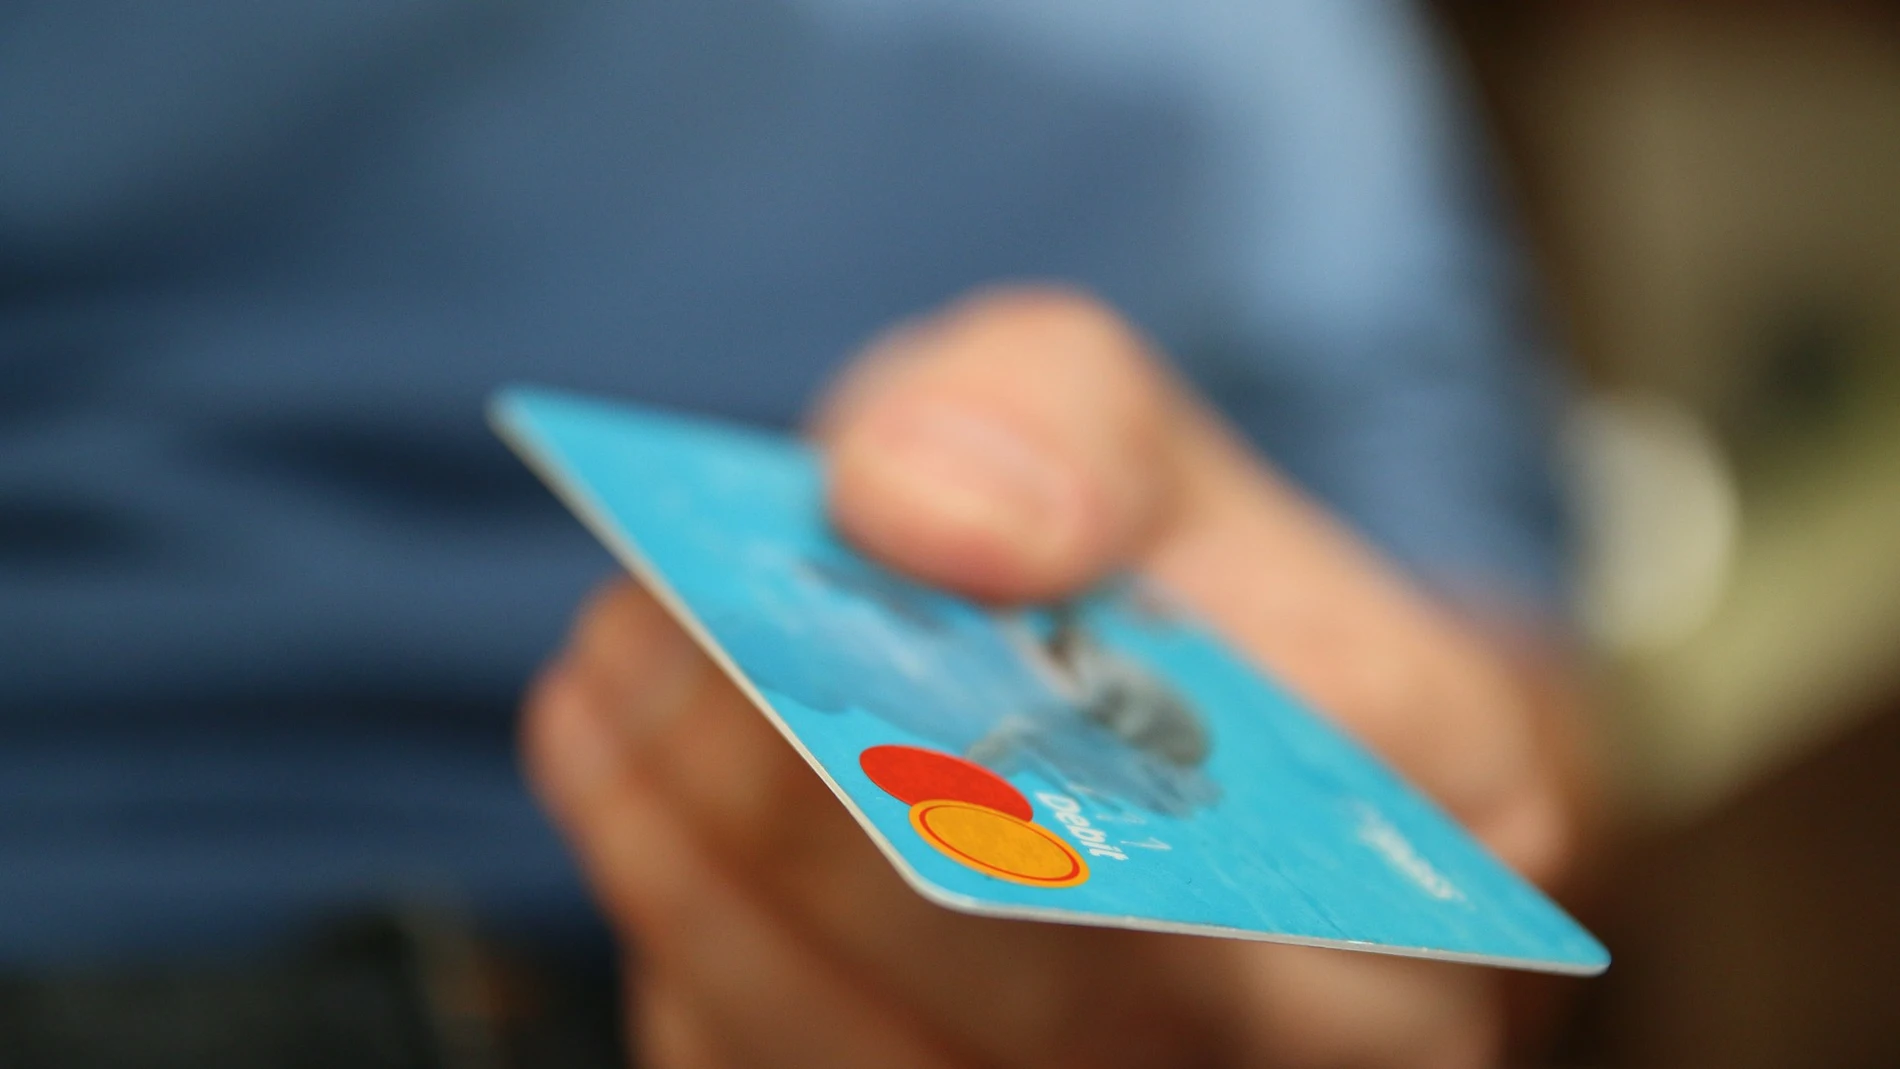 Imagen de una persona con una tarjeta bancaria